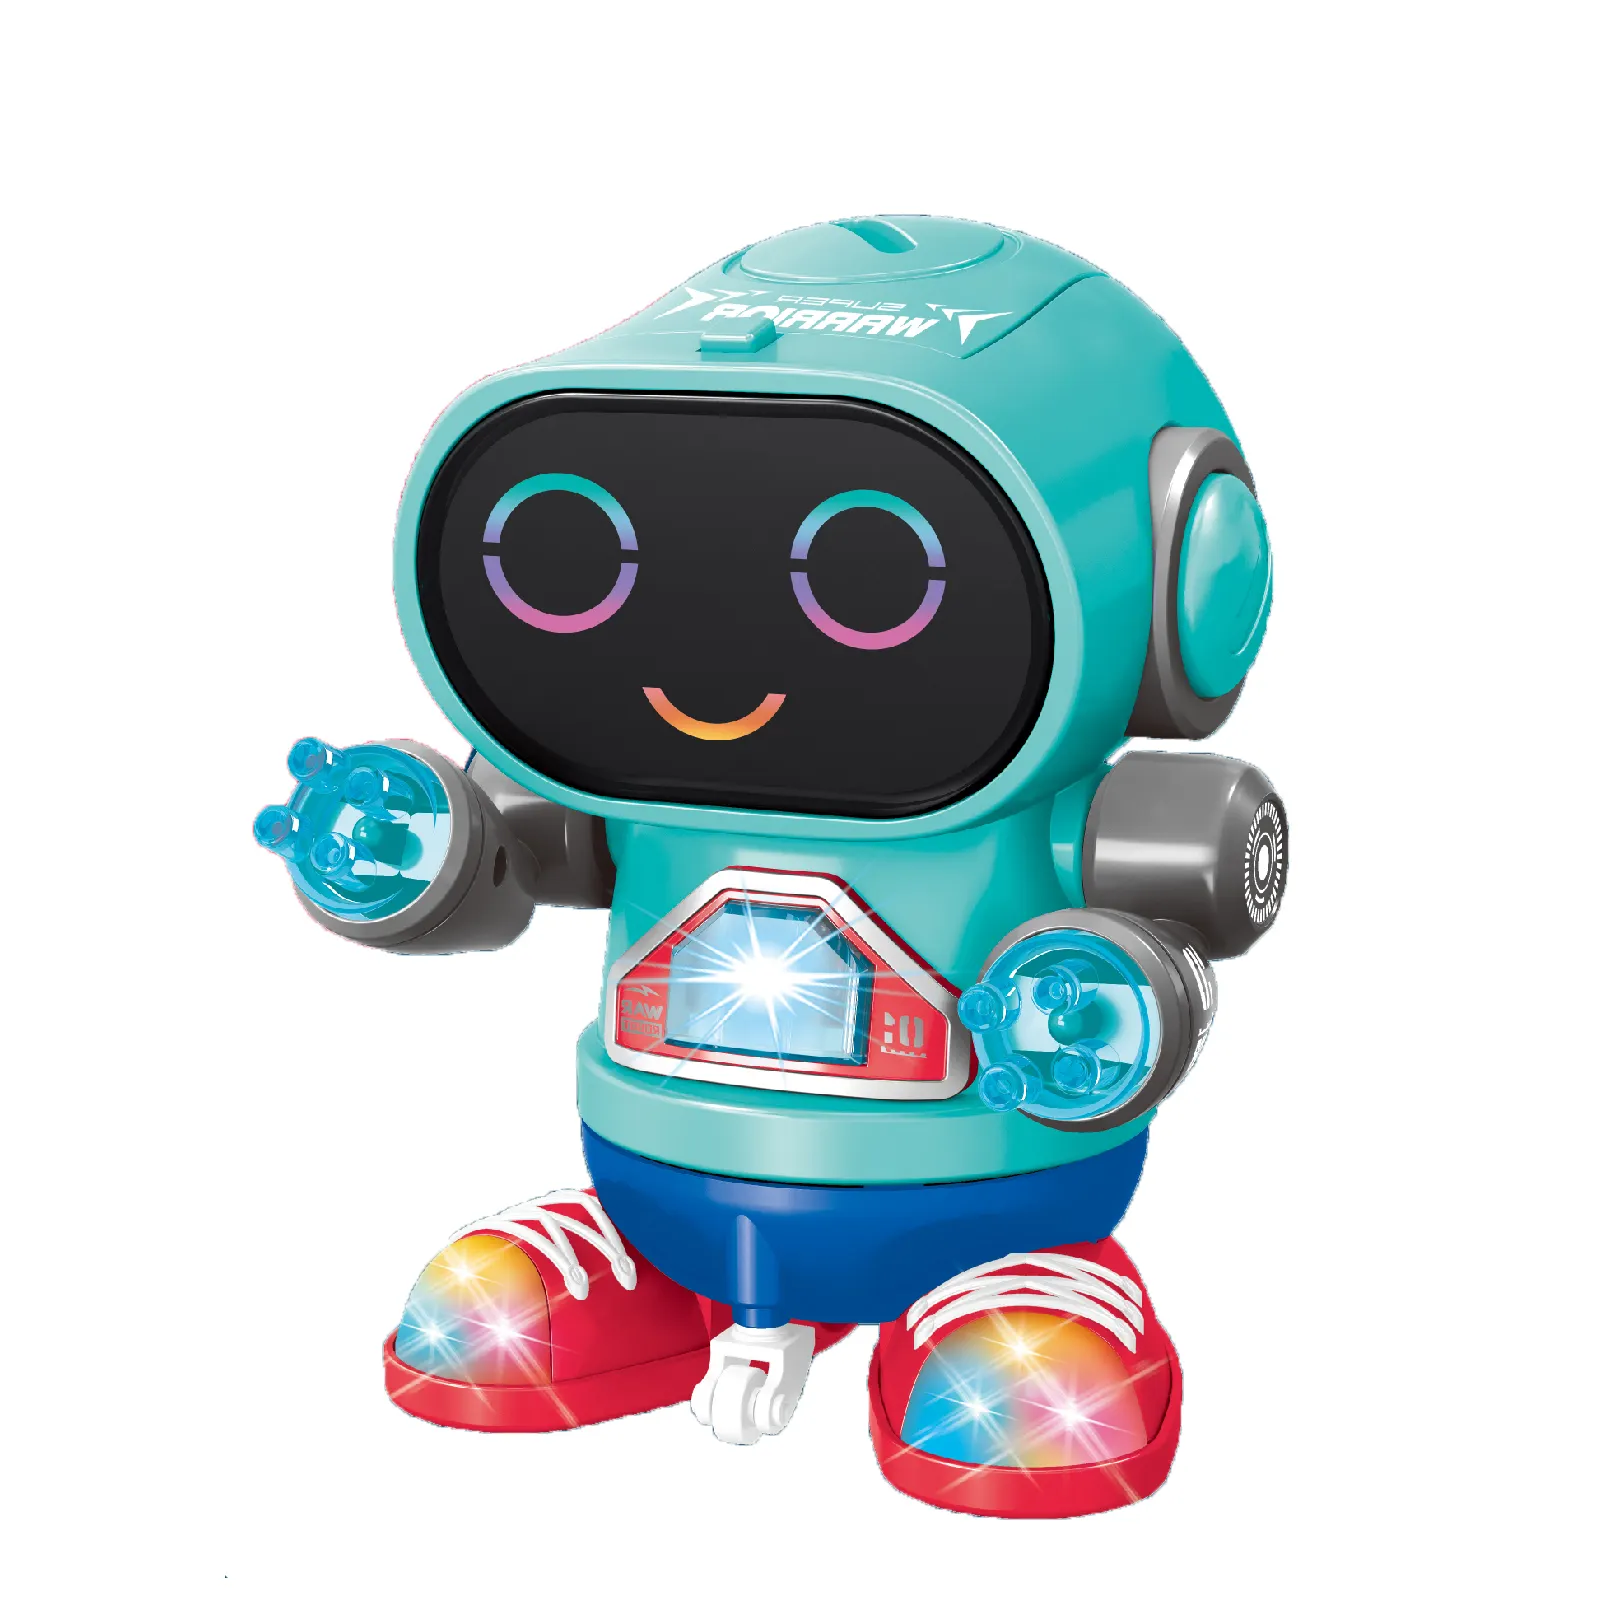 Unny-Mini robot de juguete inteligente para caminar, juguete con sonido de luz colorida, funciona con pilas